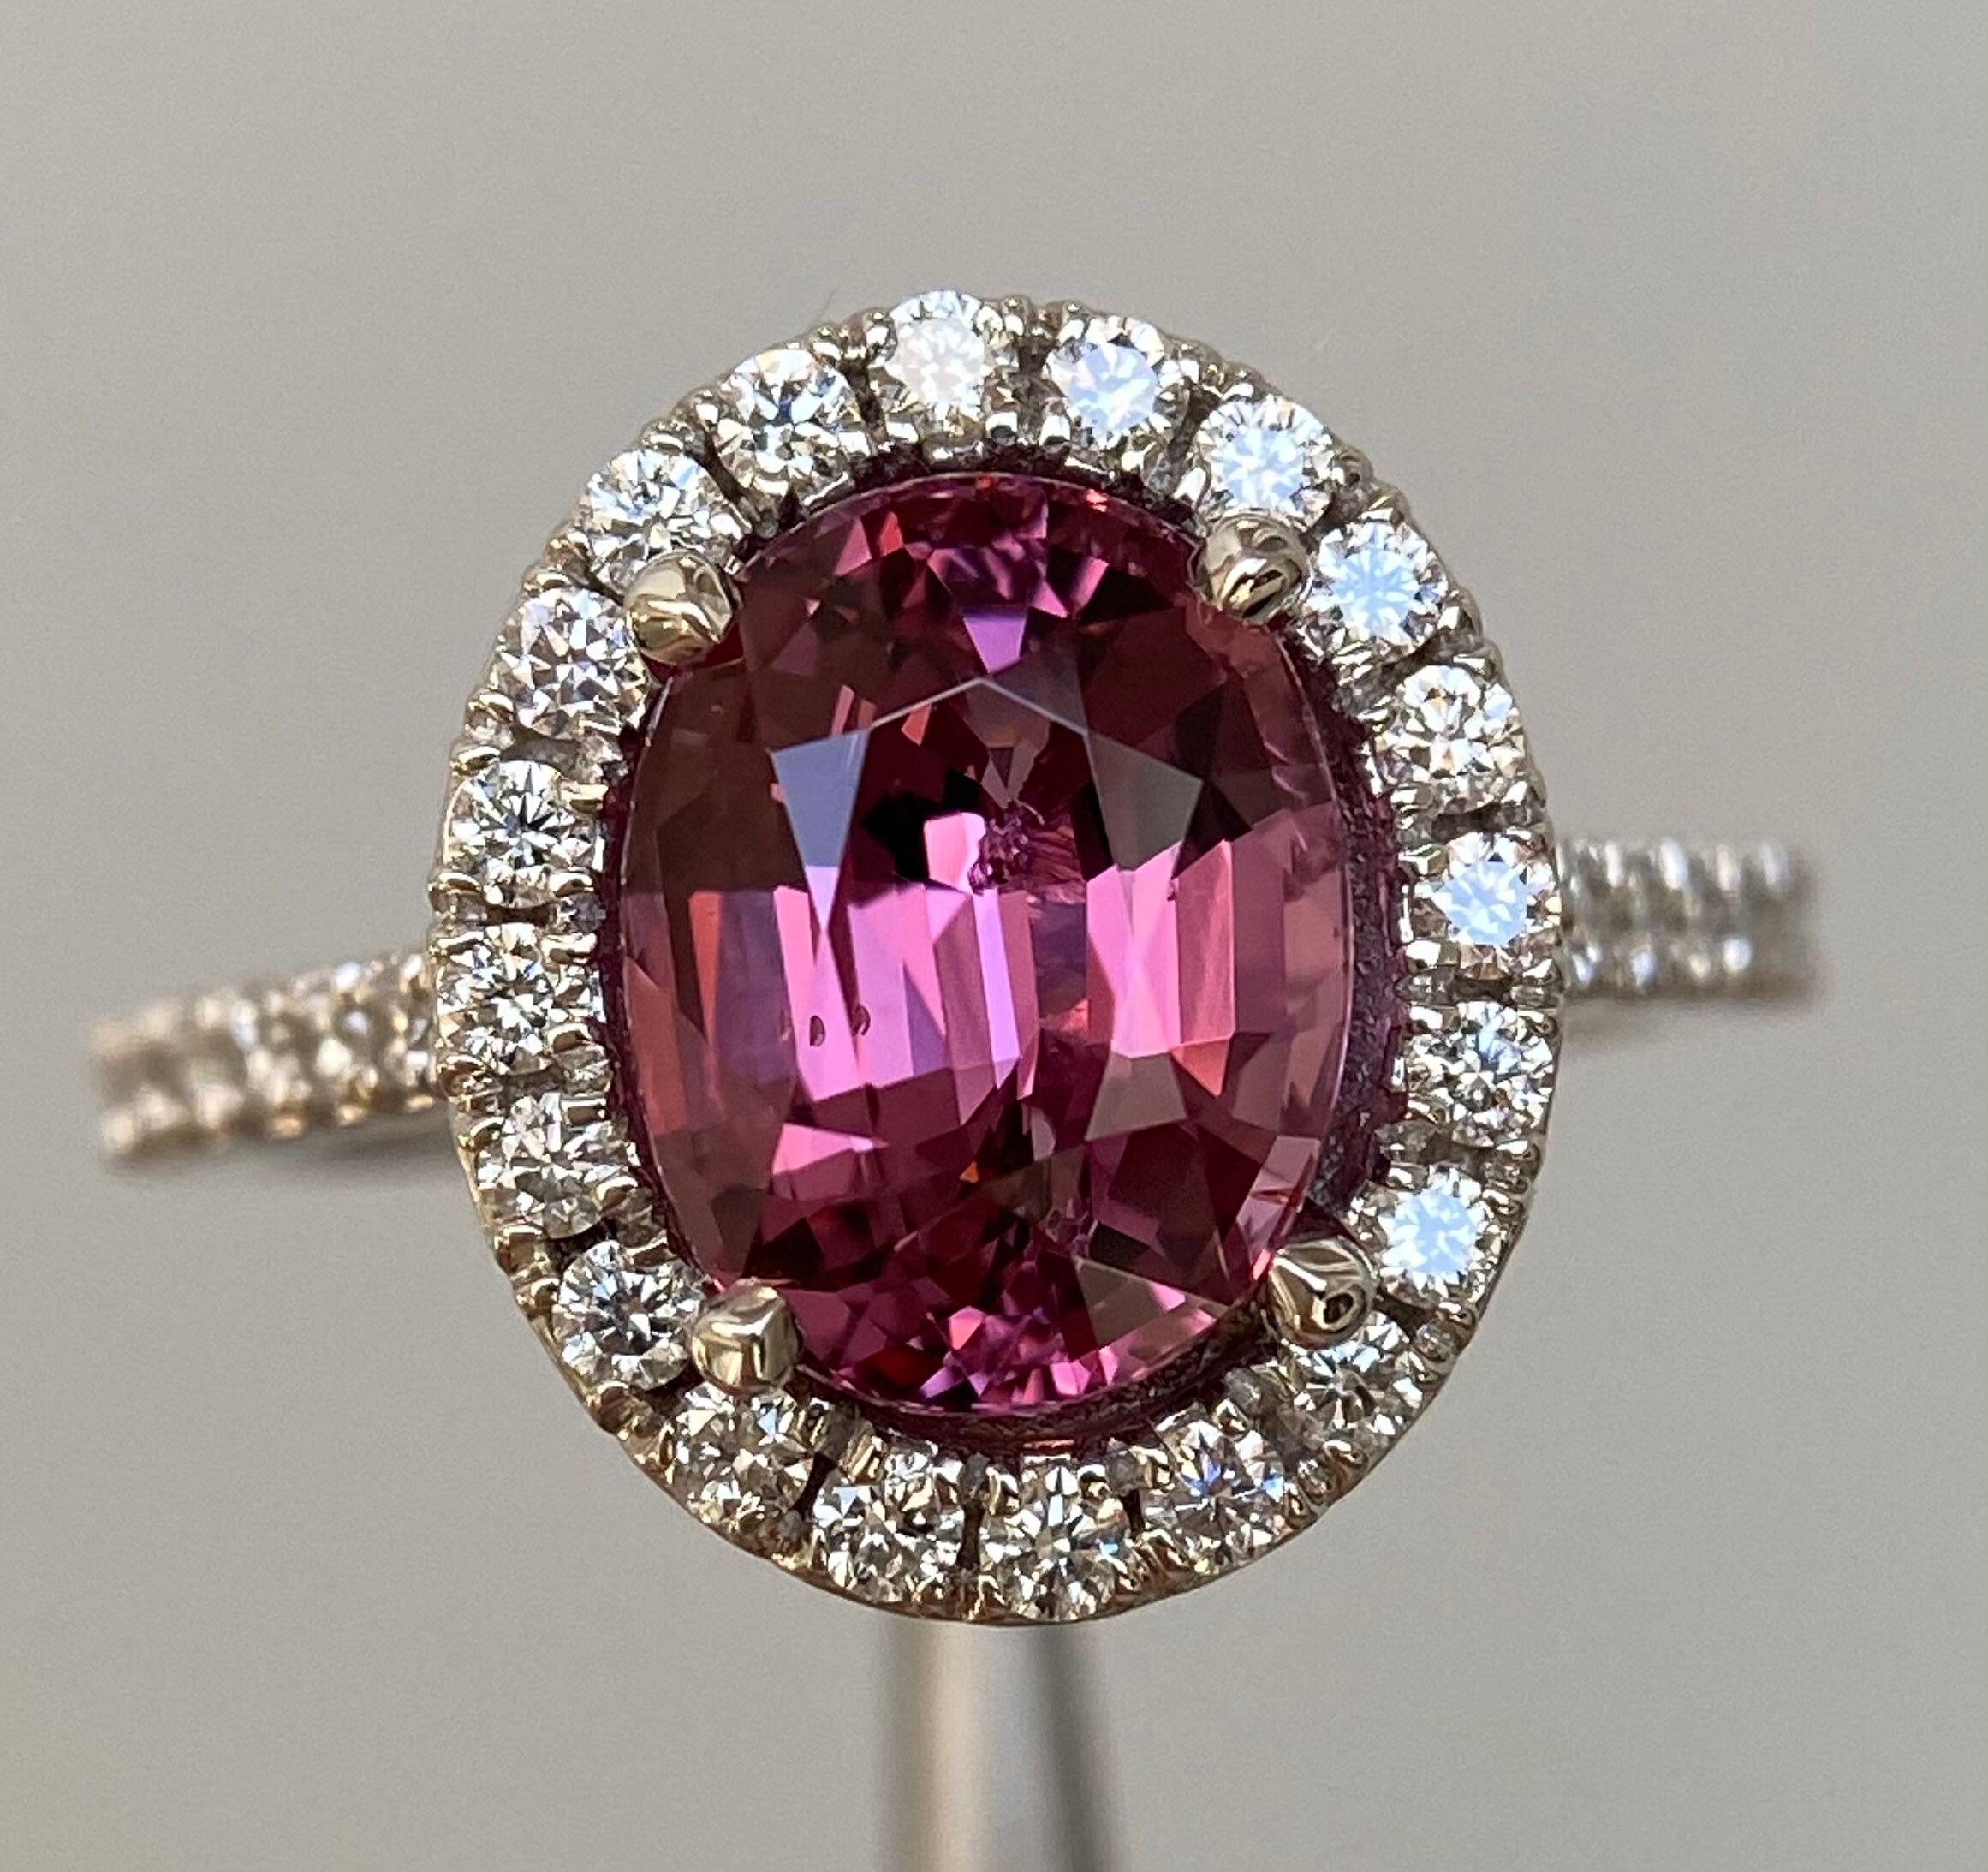 Stunning 4 Ctw Vivid Pink Spinel & Diamond Ring 14K White Gold | Etsy